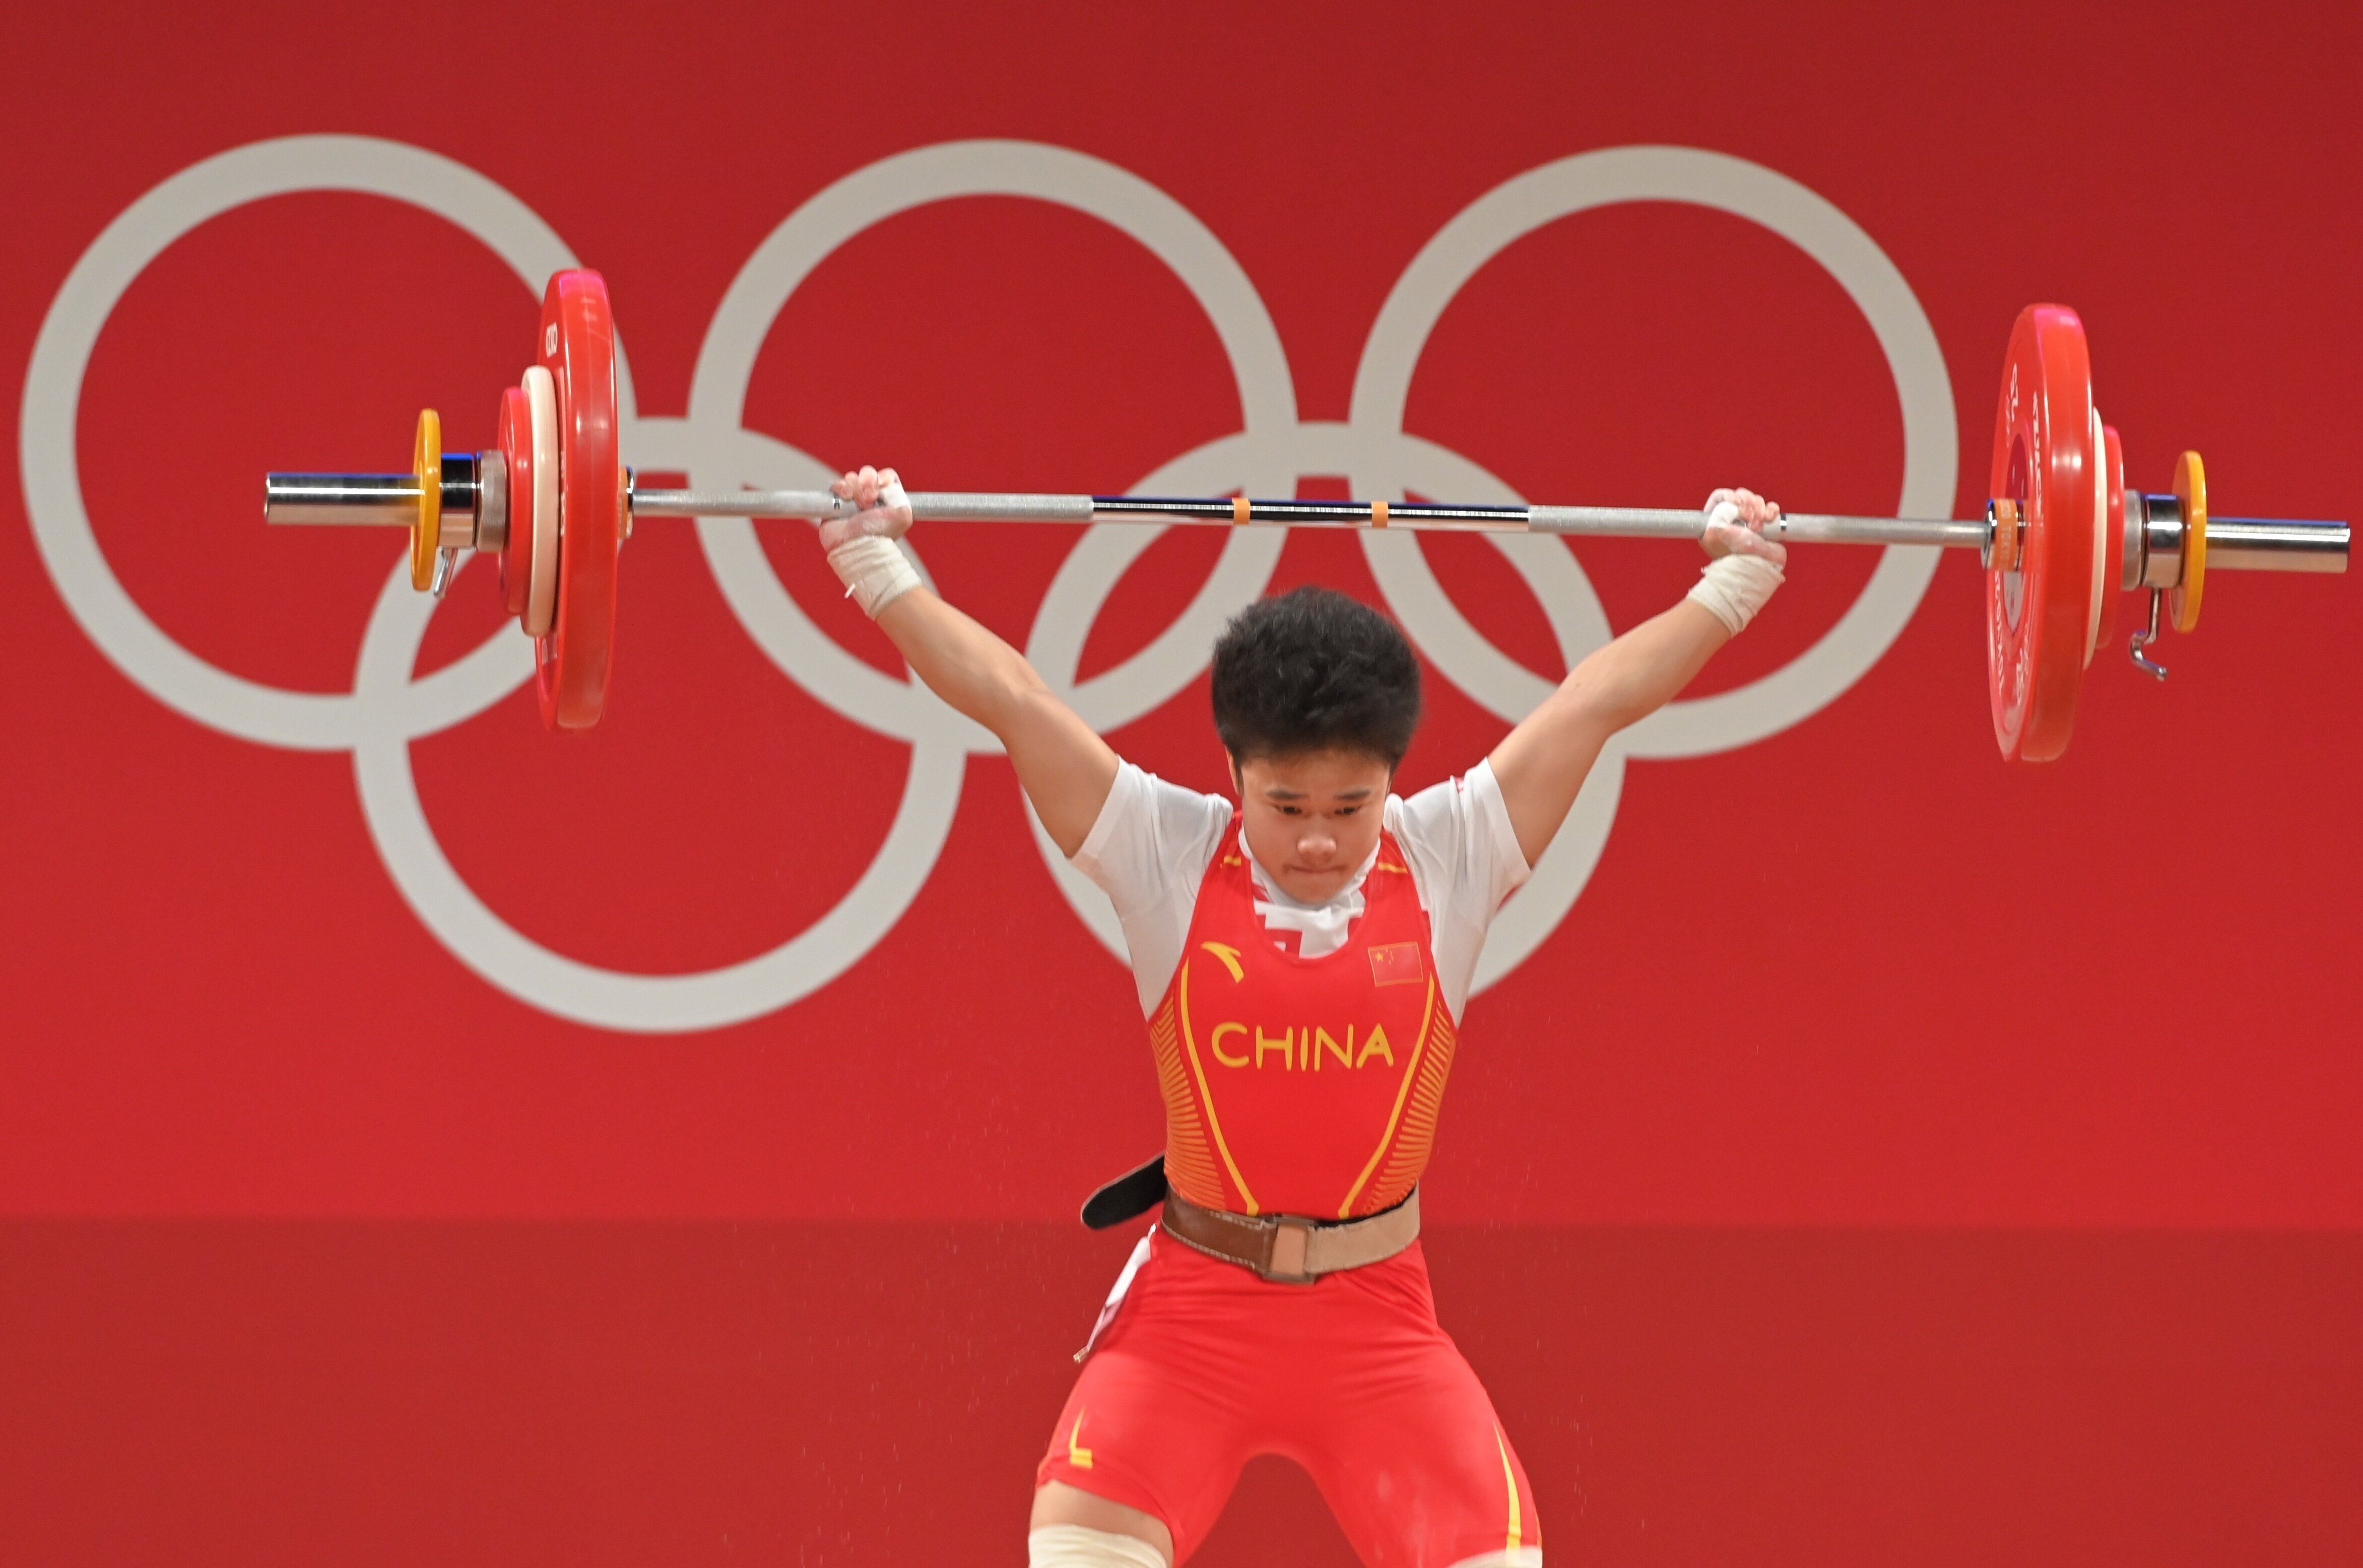 侯志慧夺得东京奥运会举重女子49kg级金牌